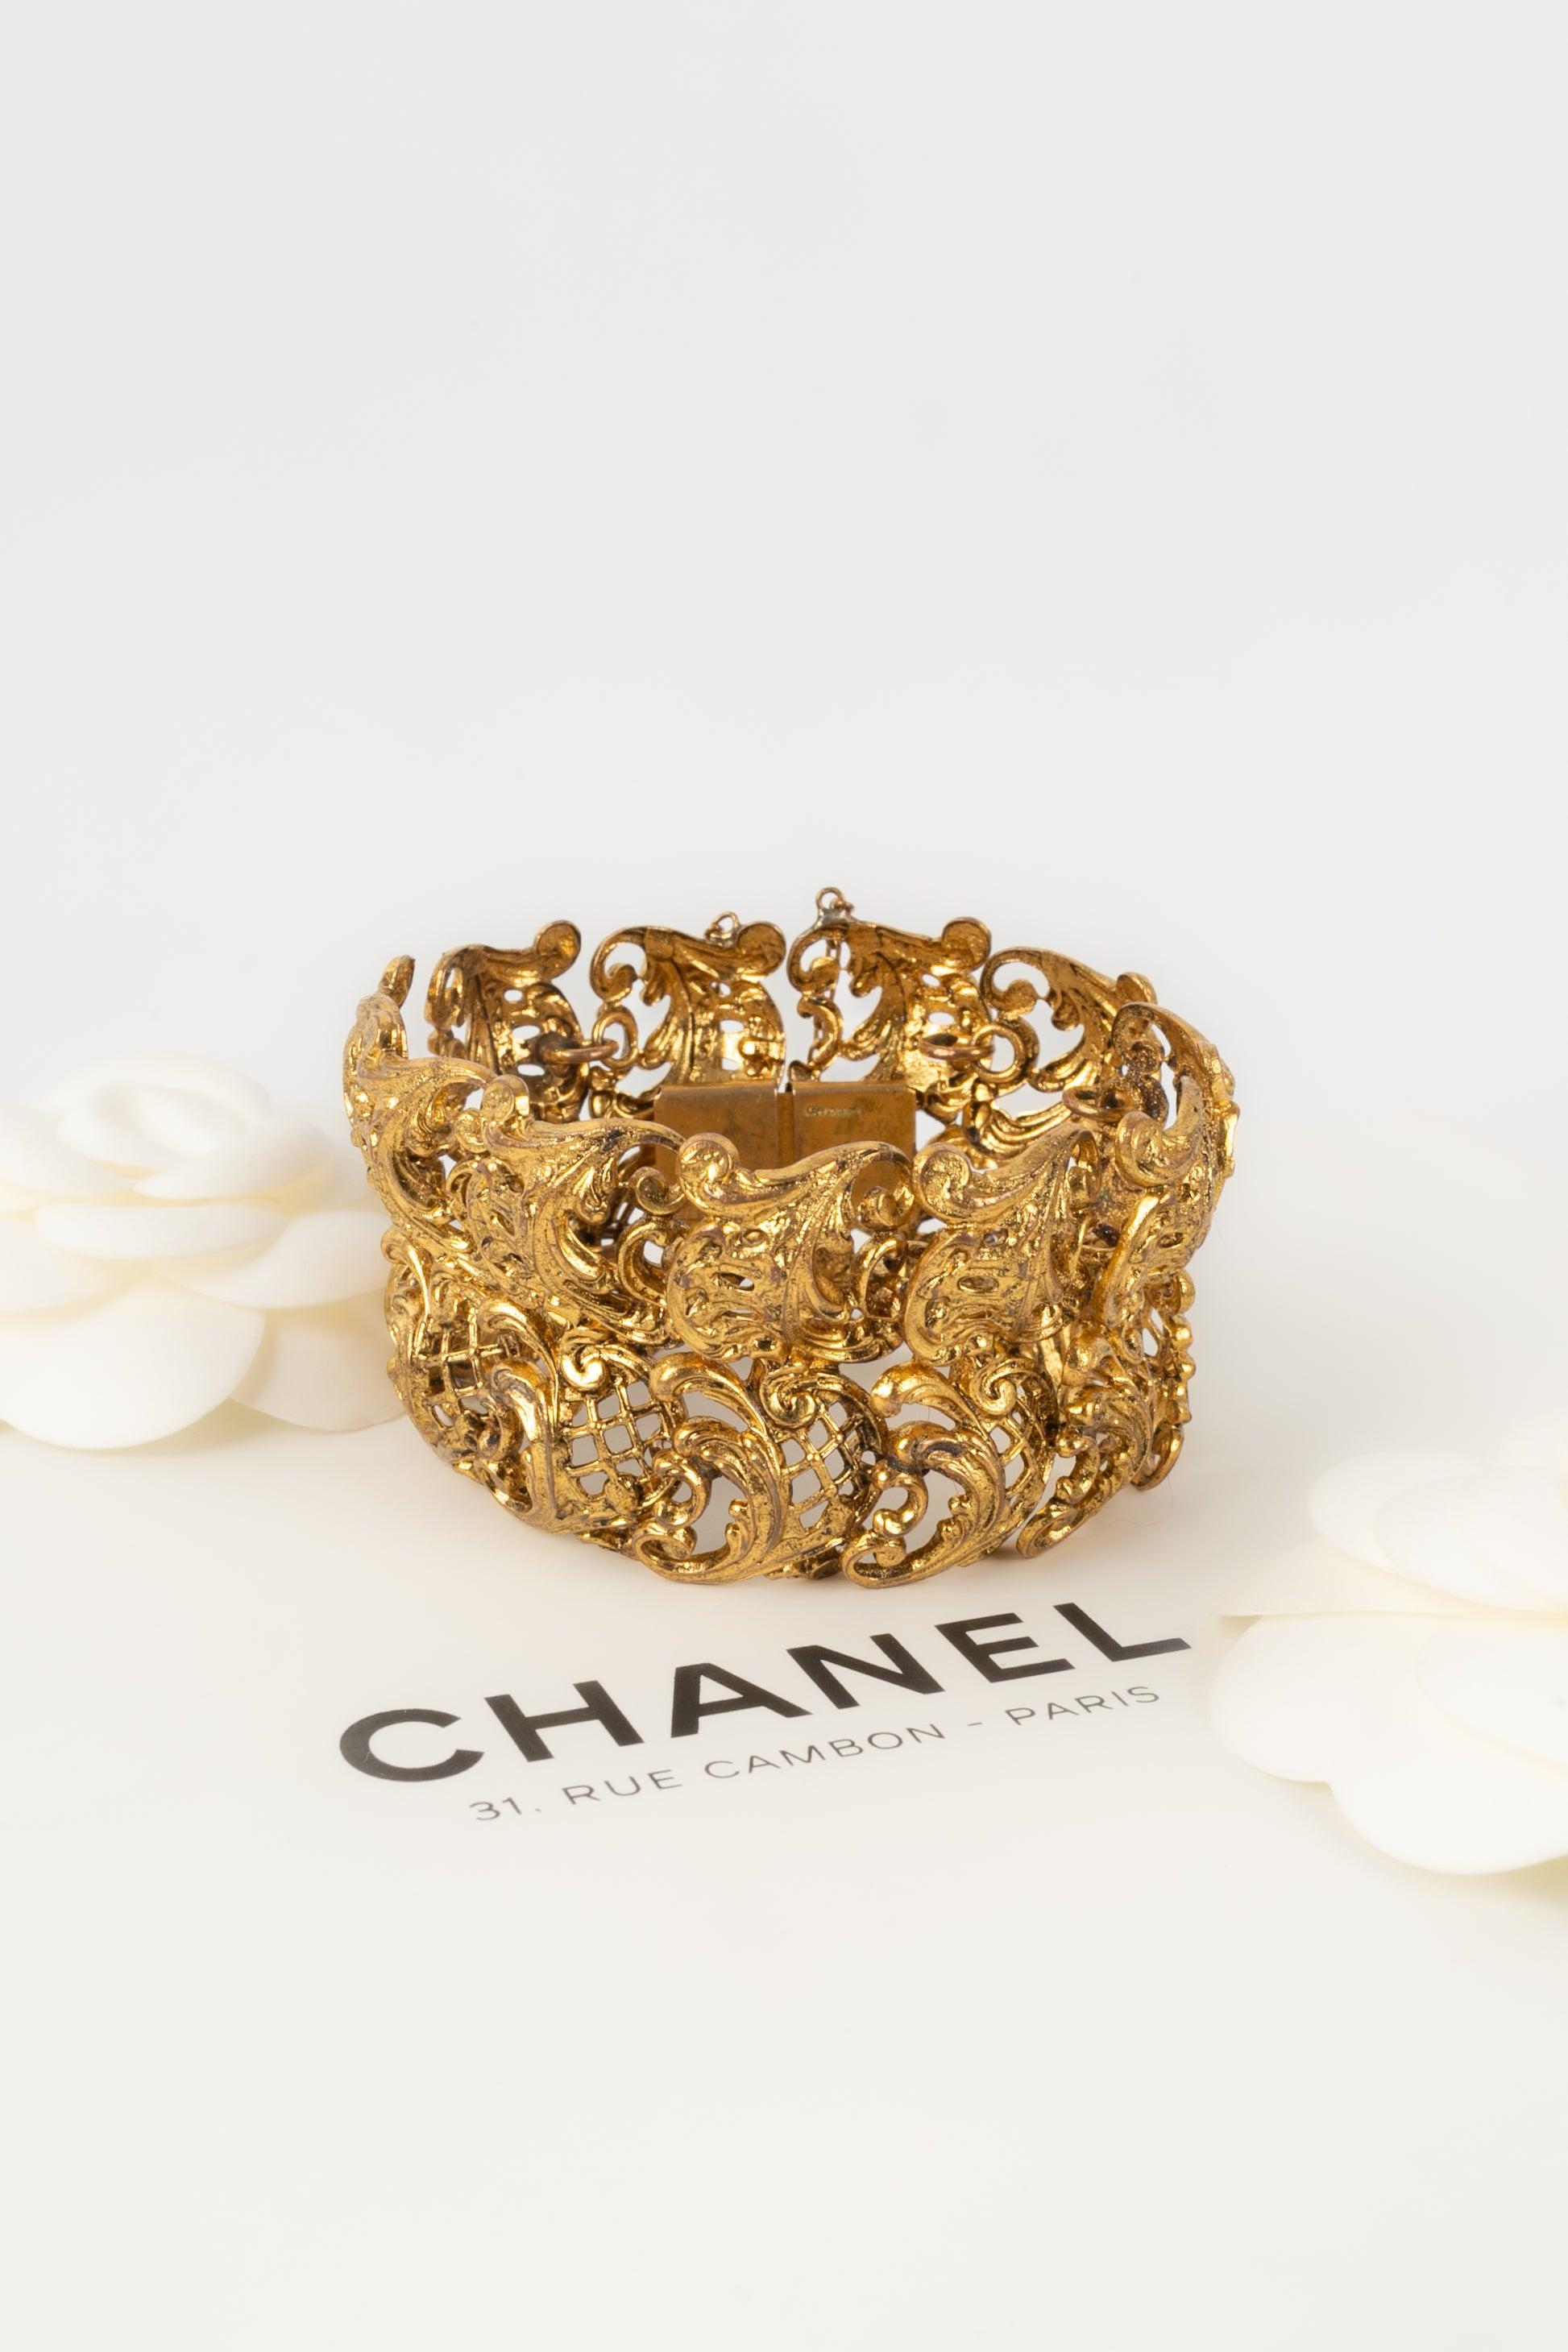 Chanel Bracelet Haute Couture Golden Metal Openwork For Sale 3